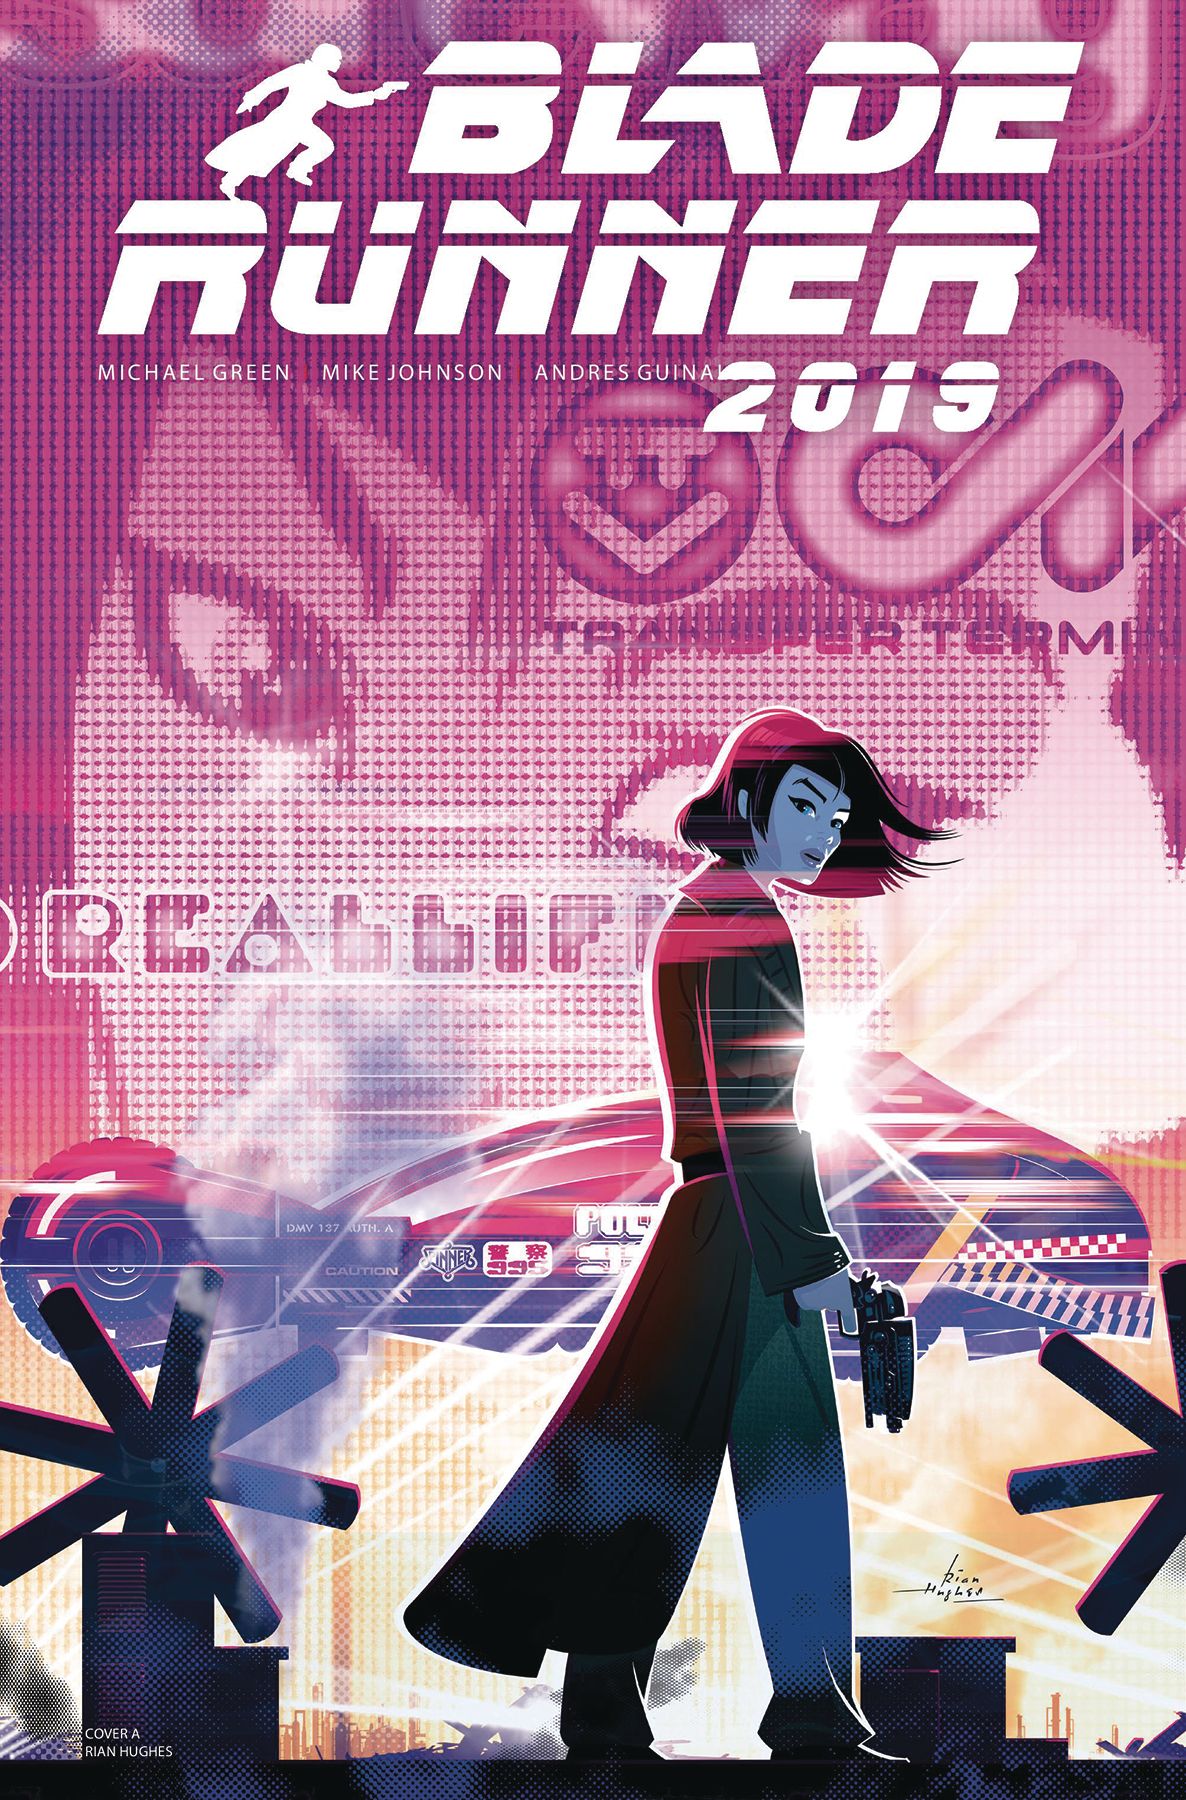 Blade Runner 2019 #6 Comic